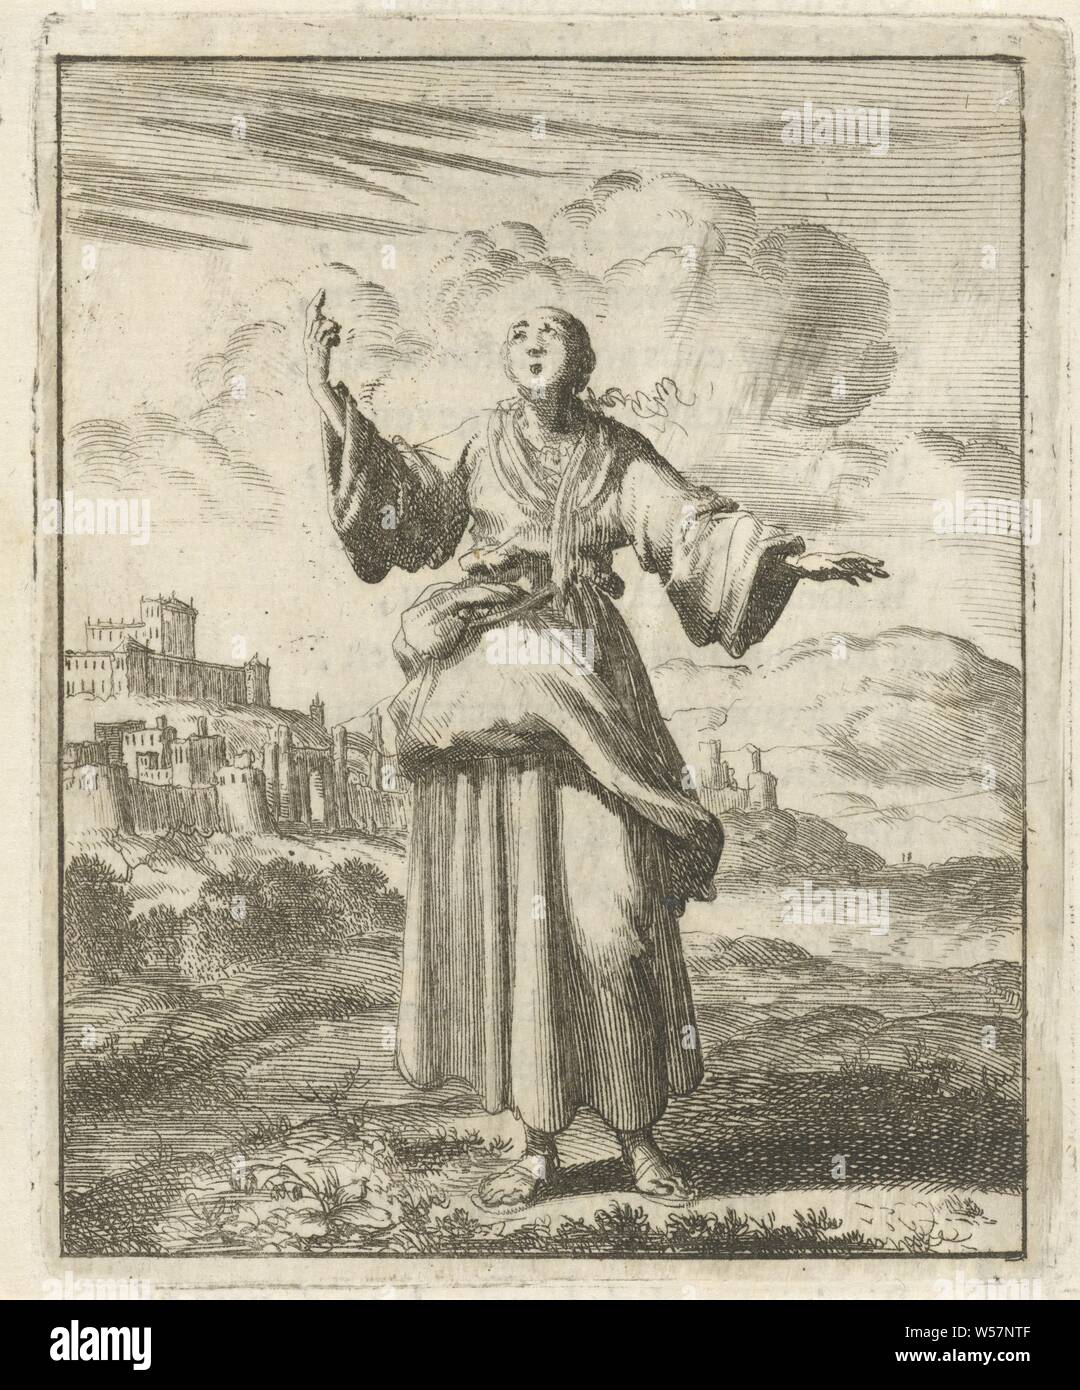 Frau zeigt der Himmel weder weit noch wyt, aber es gibt sie, Himmel, Himmel, Jan Luyken, Amsterdam, 1687, Papier, Buchdruck, H 96 mm x B 77 mm Stockfoto